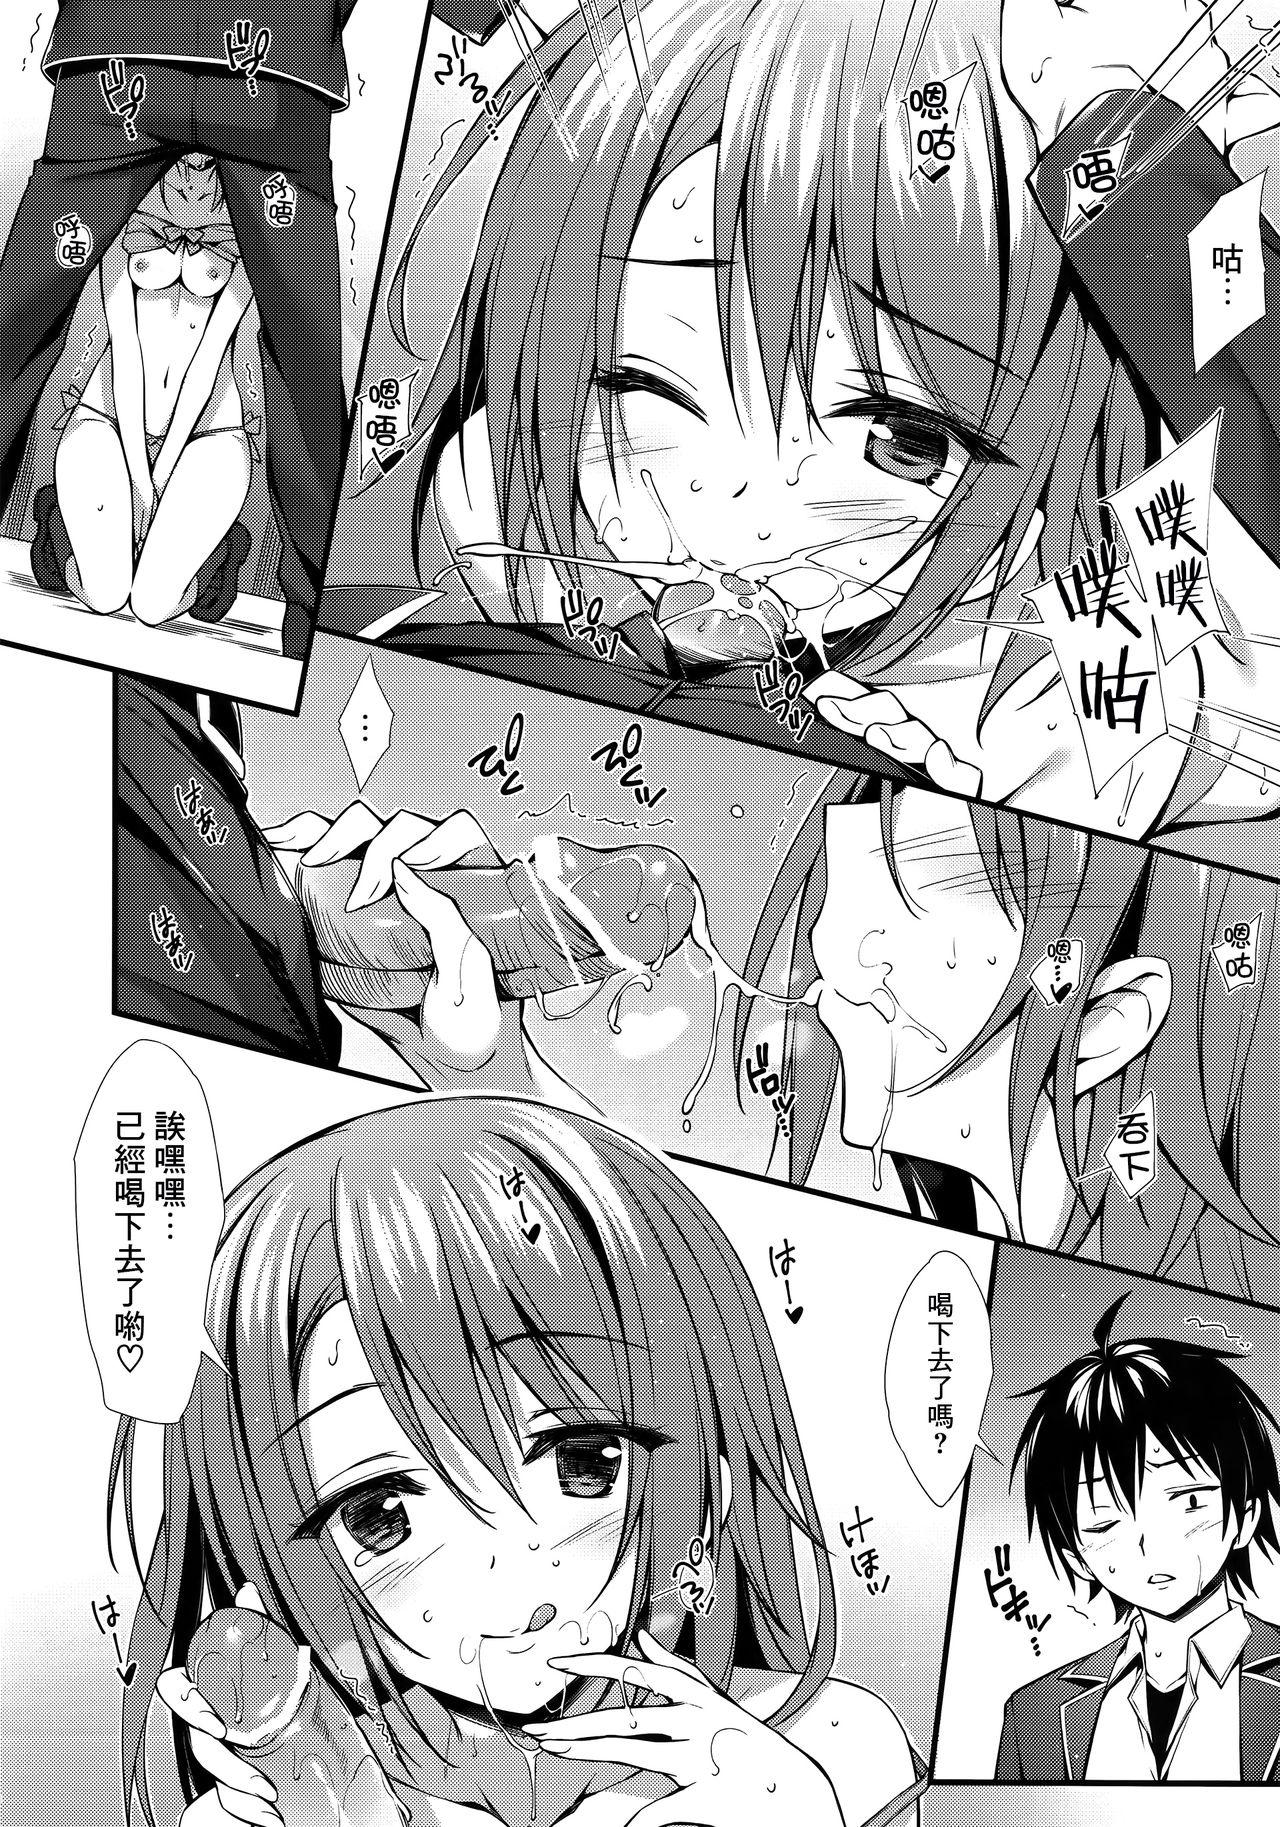 Arabe Atashi no Daisuki na Senpai♥ - Yahari ore no seishun love come wa machigatteiru Throatfuck - Page 9